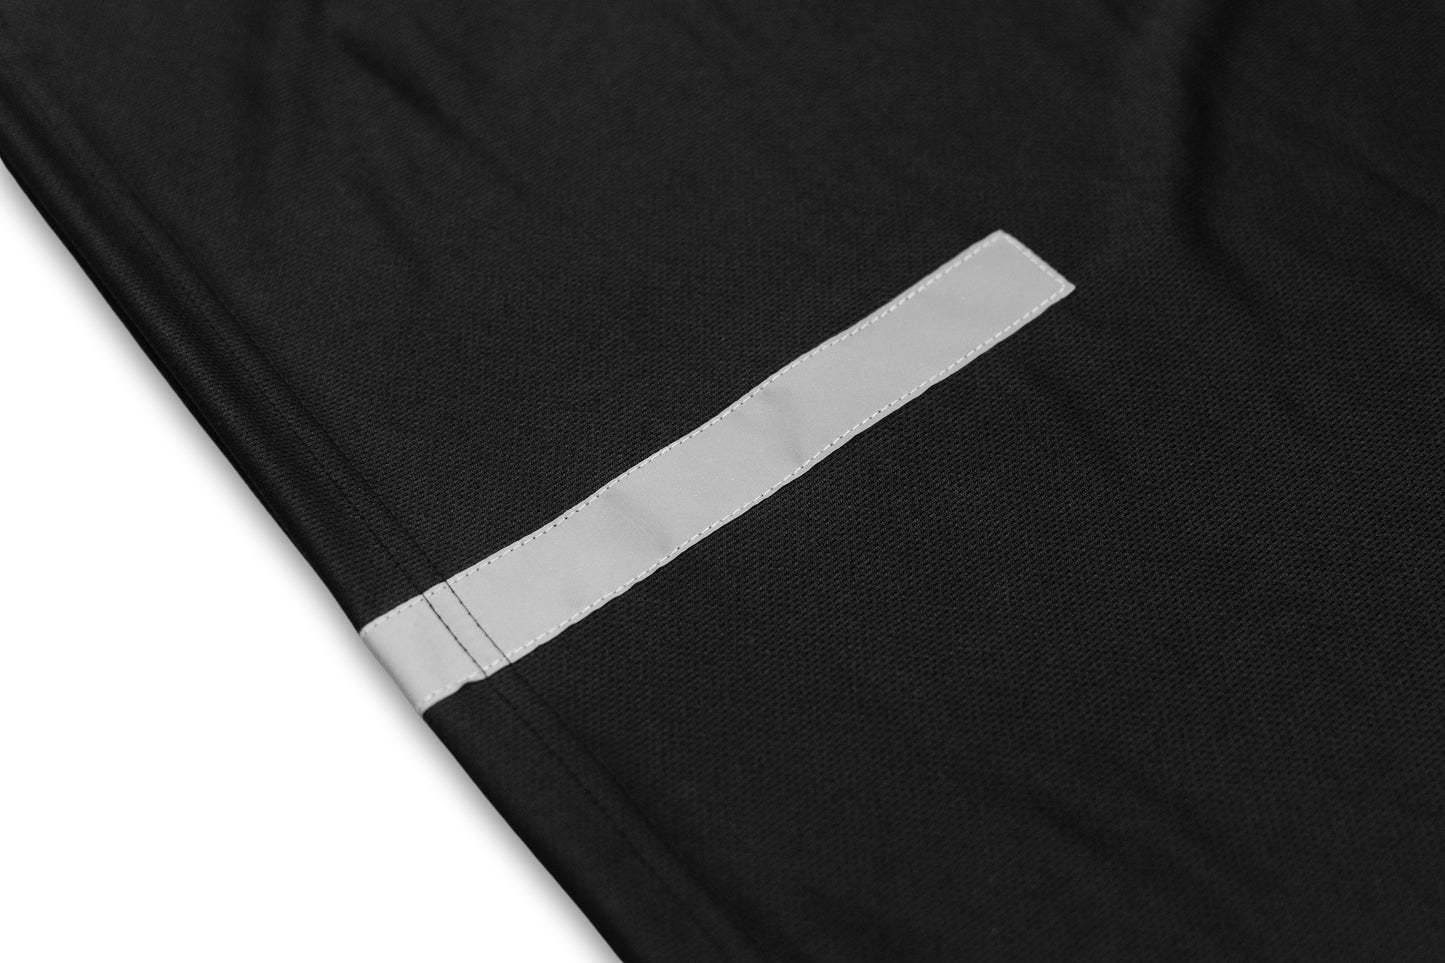 GW Plain Drifit Short-sleeves w/ Reflective Strip (Black)